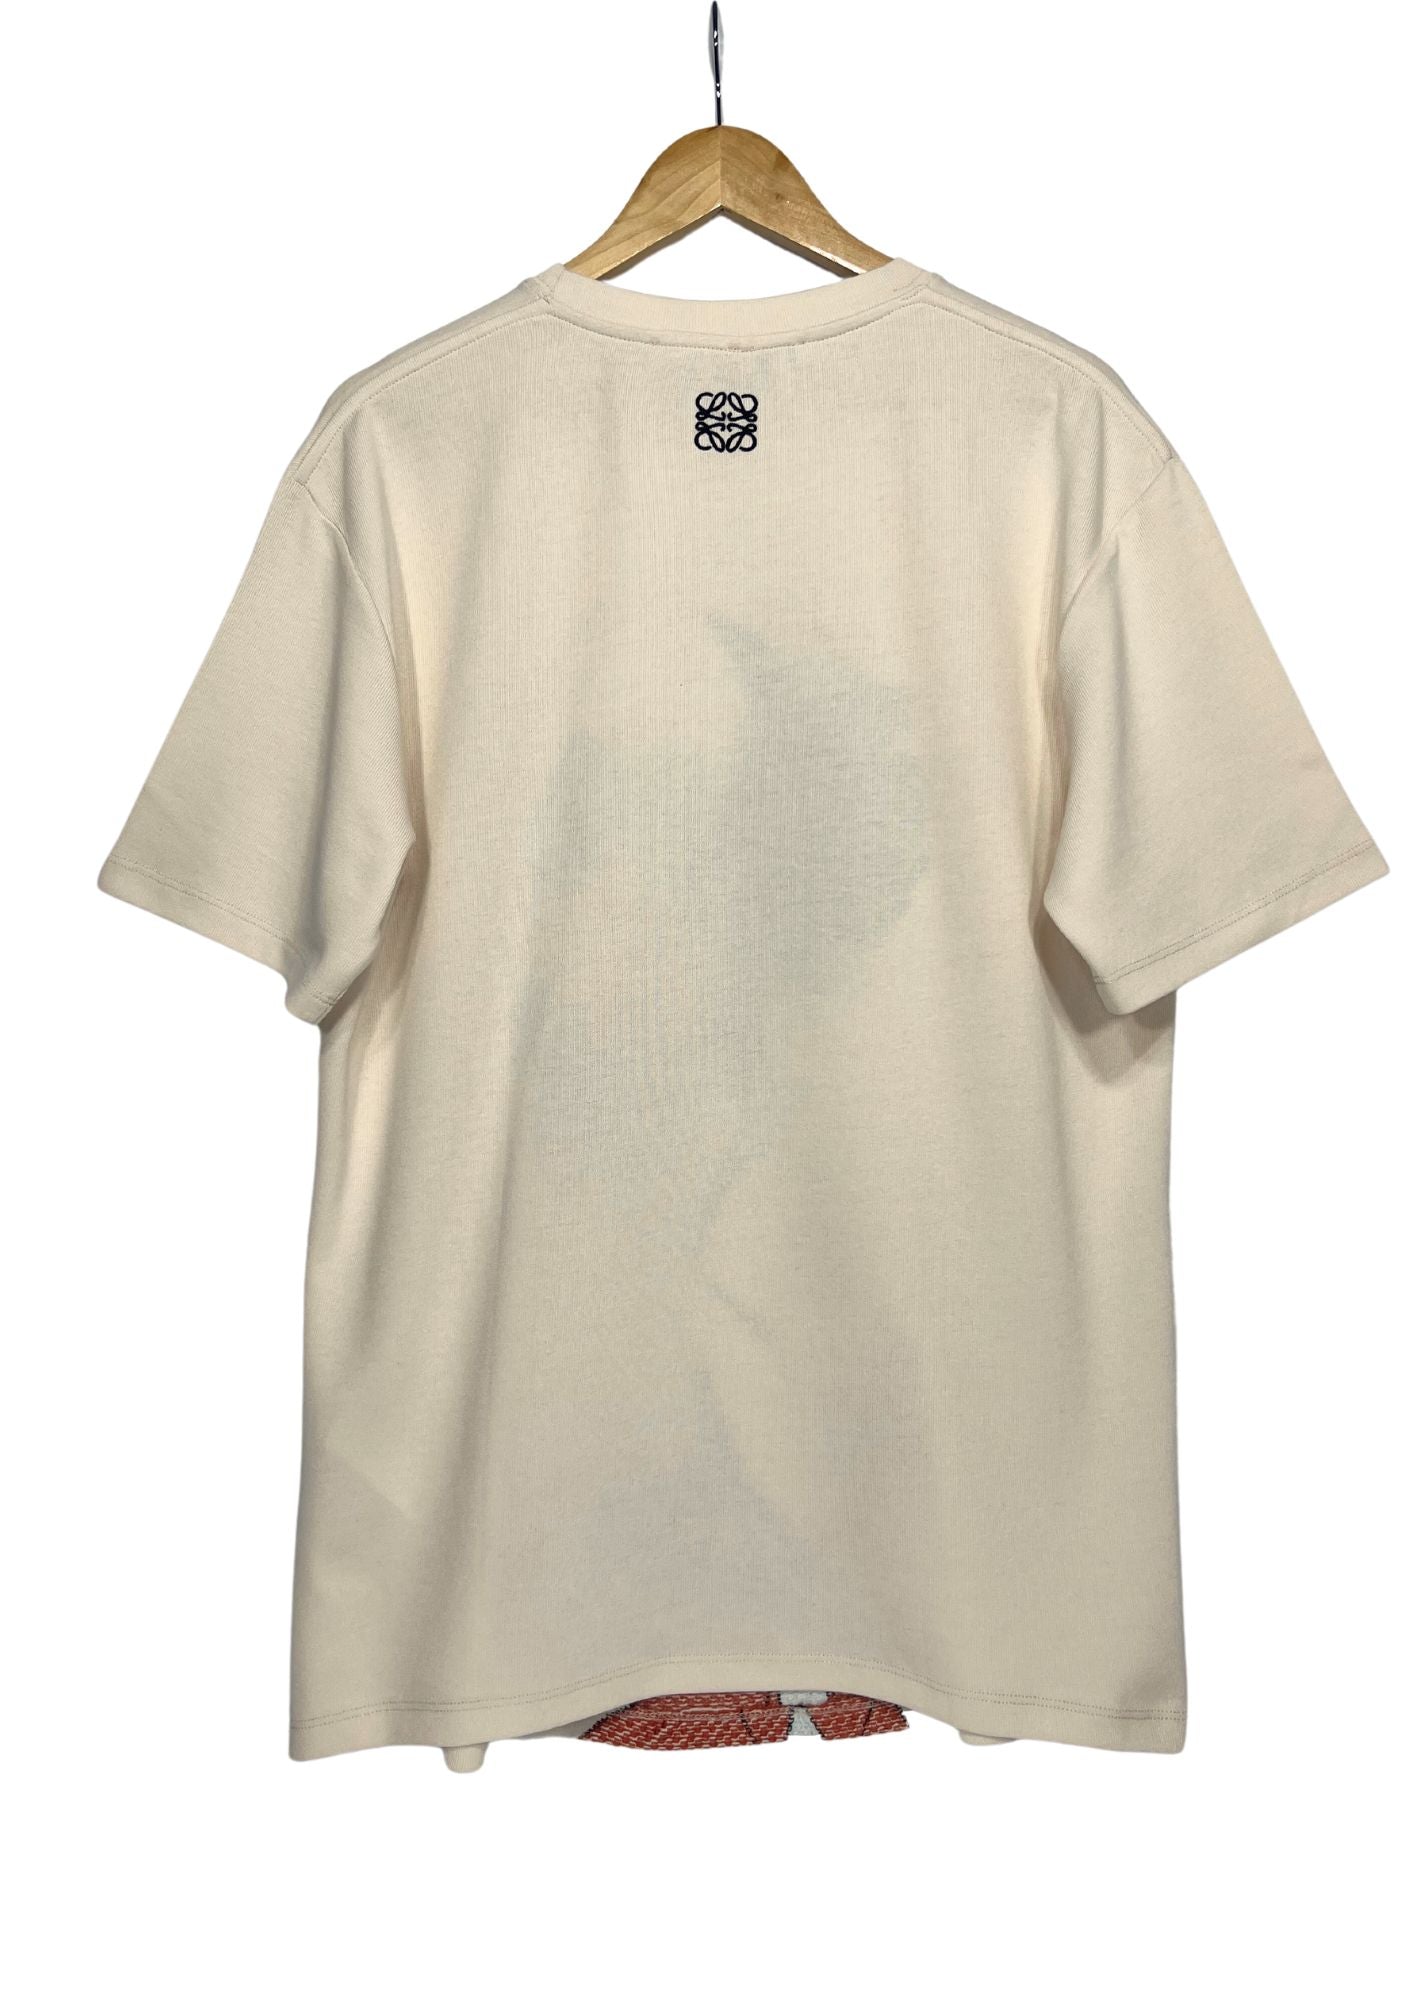 2021 Spirited Away x Loewe Chihiro Embroidered T-shirt